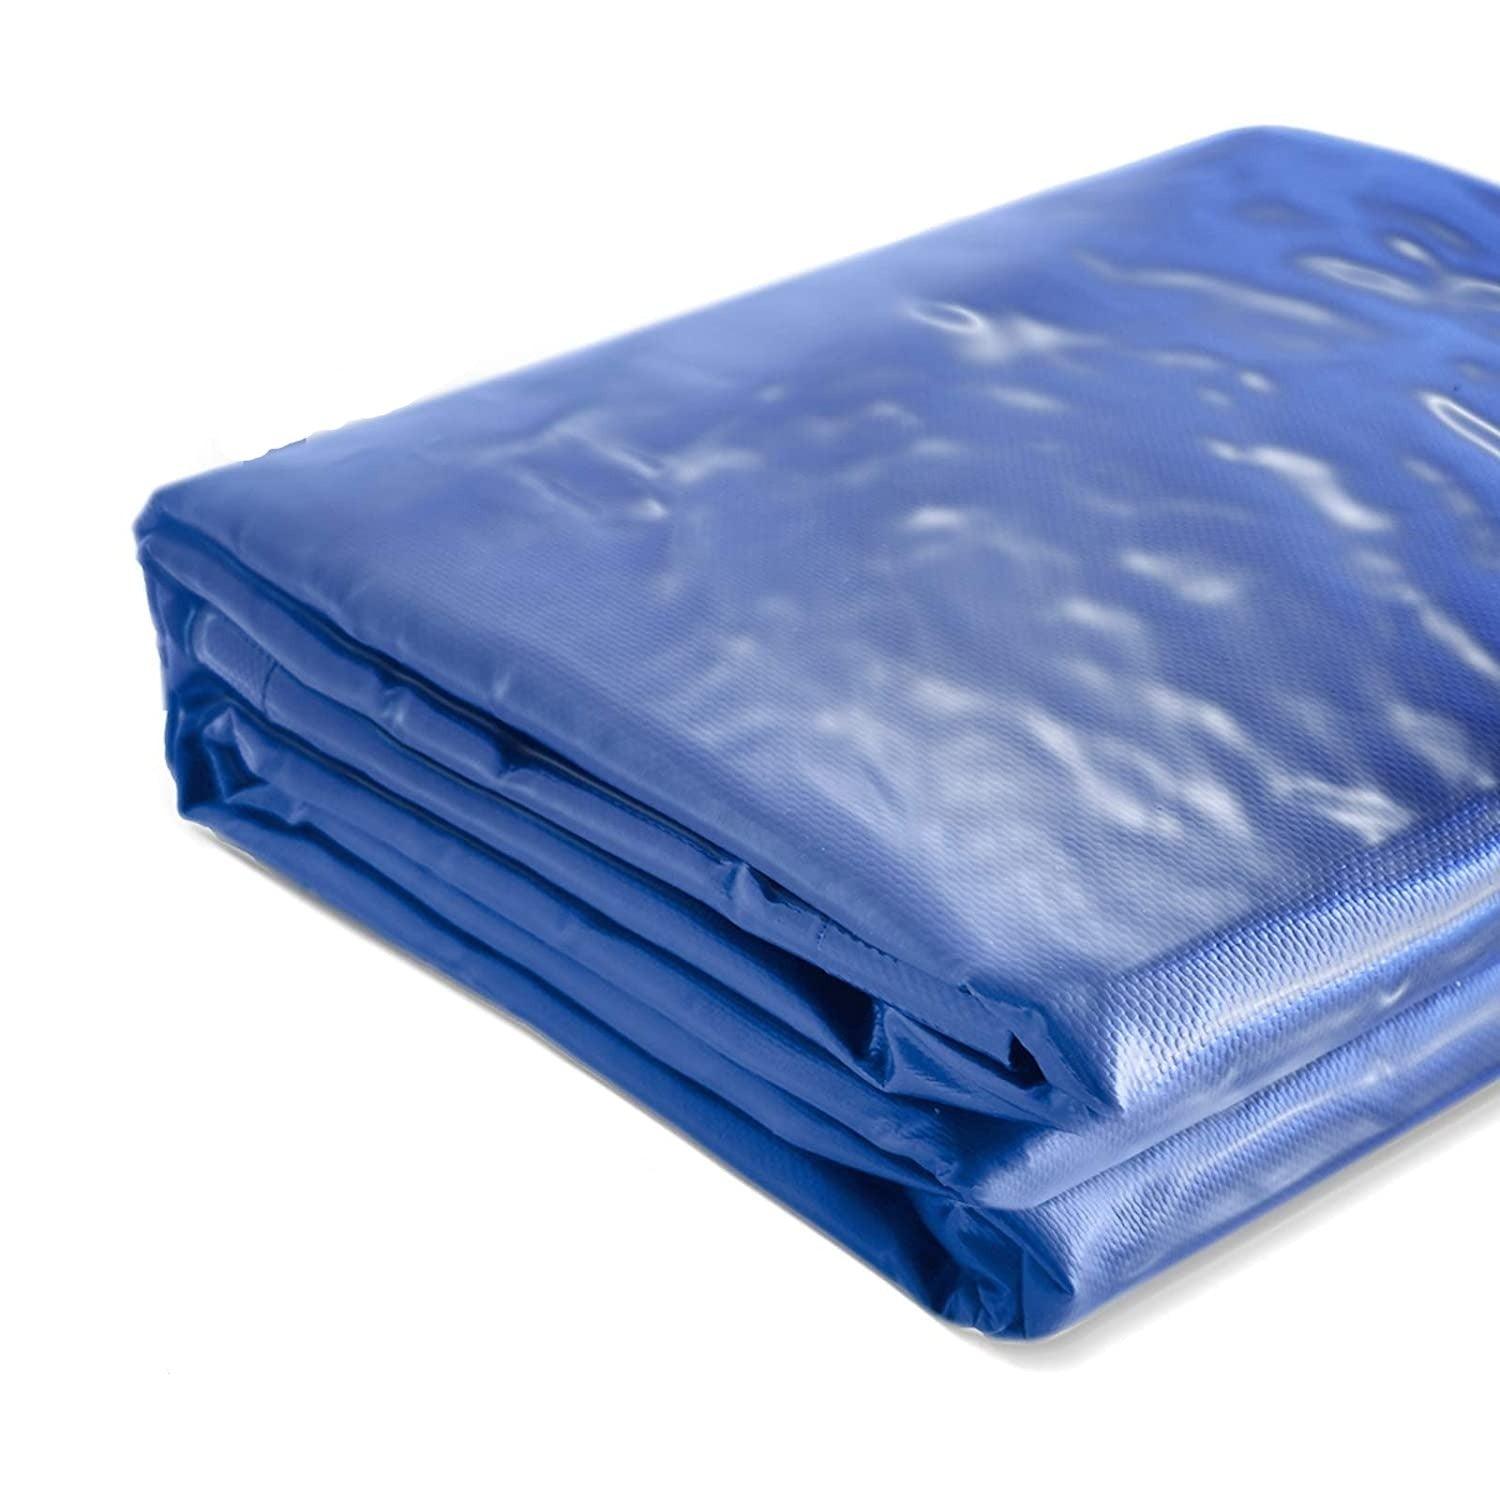 Bâche de protection imperméable résistante aux intempéries polyester revêtu  de pvc 650 g m² couverture étanche d'extérie